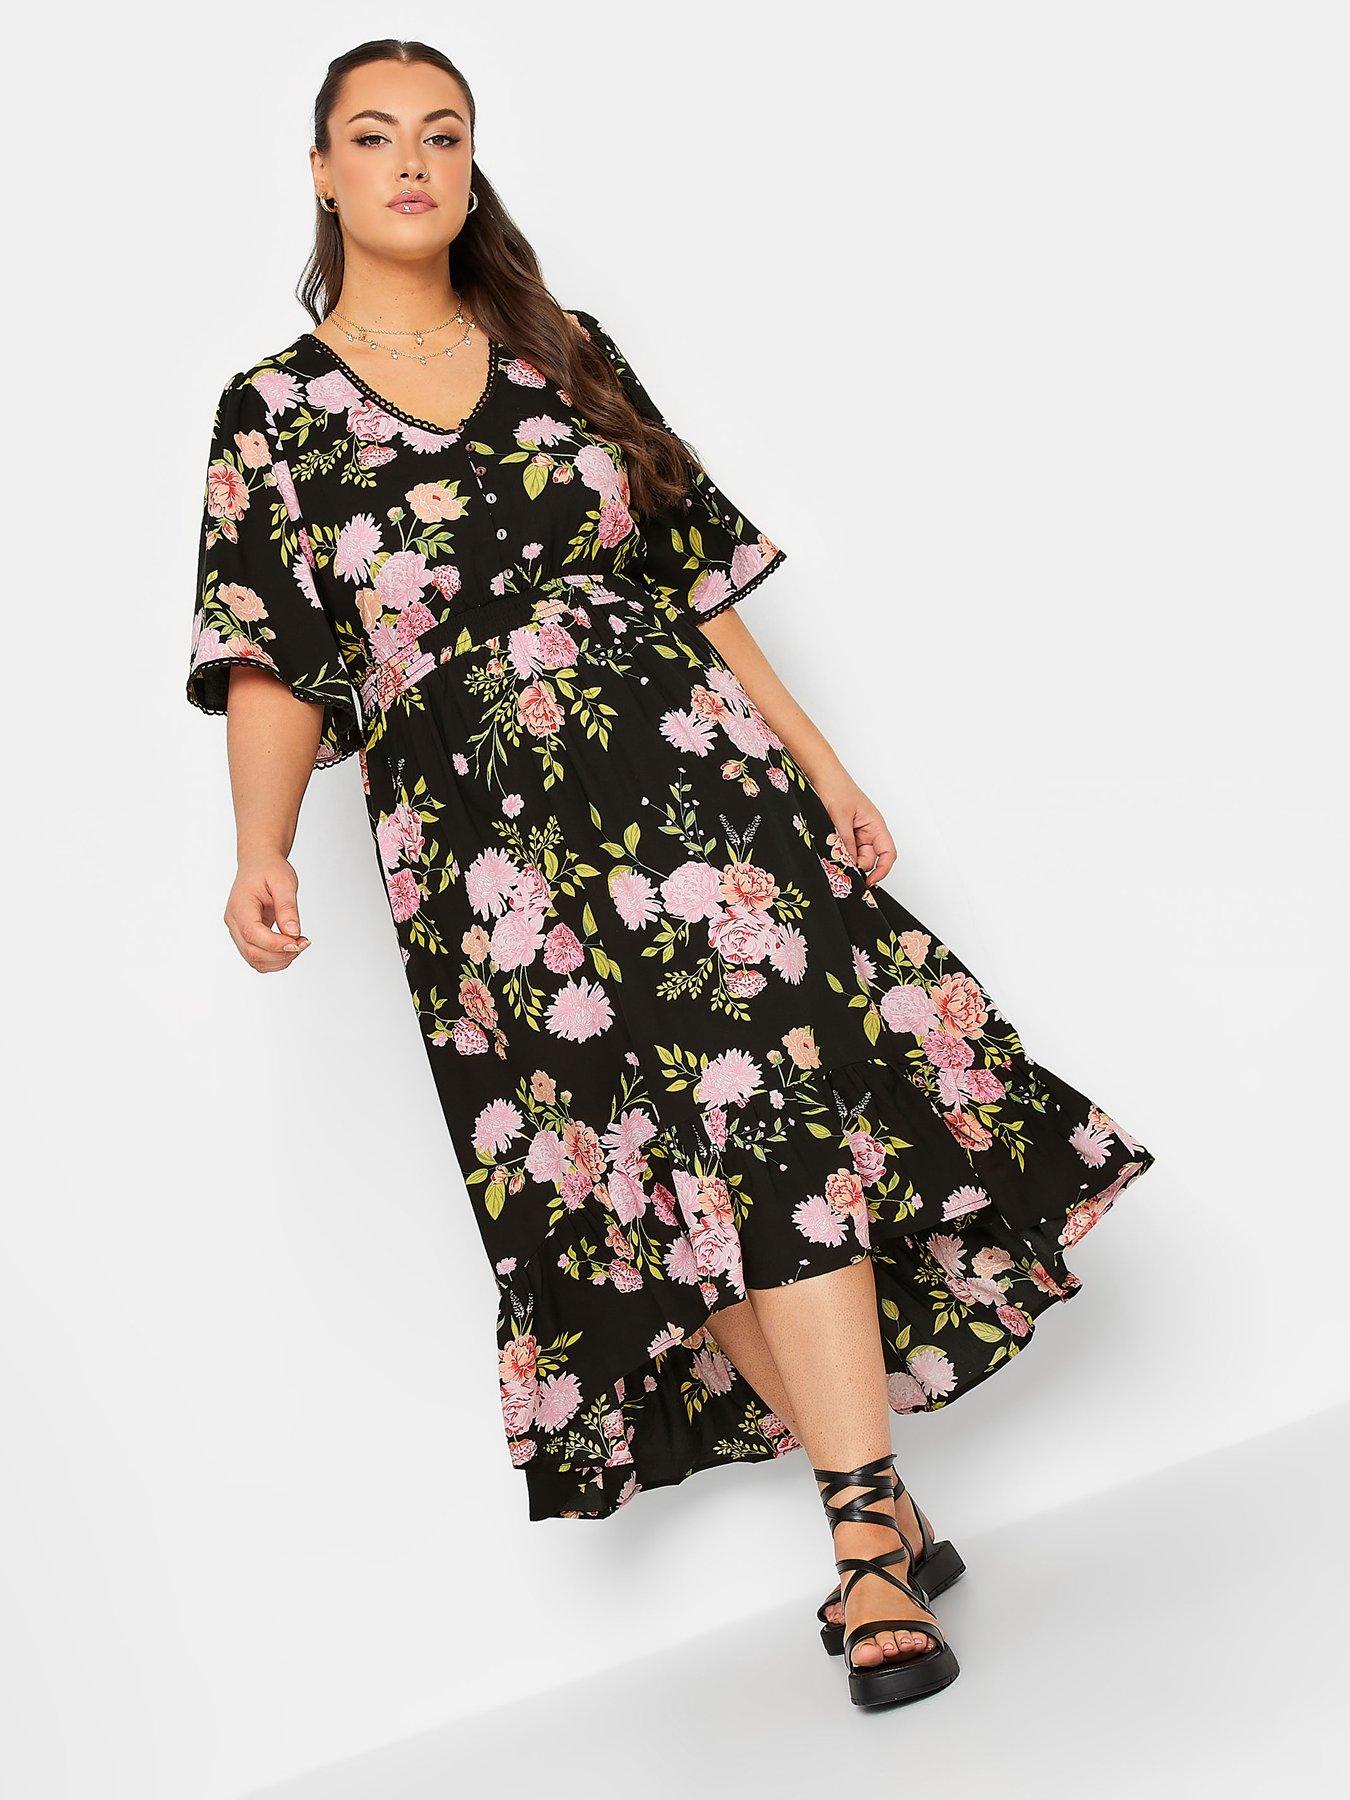 Floral Dresses, Maxi, Midi & More